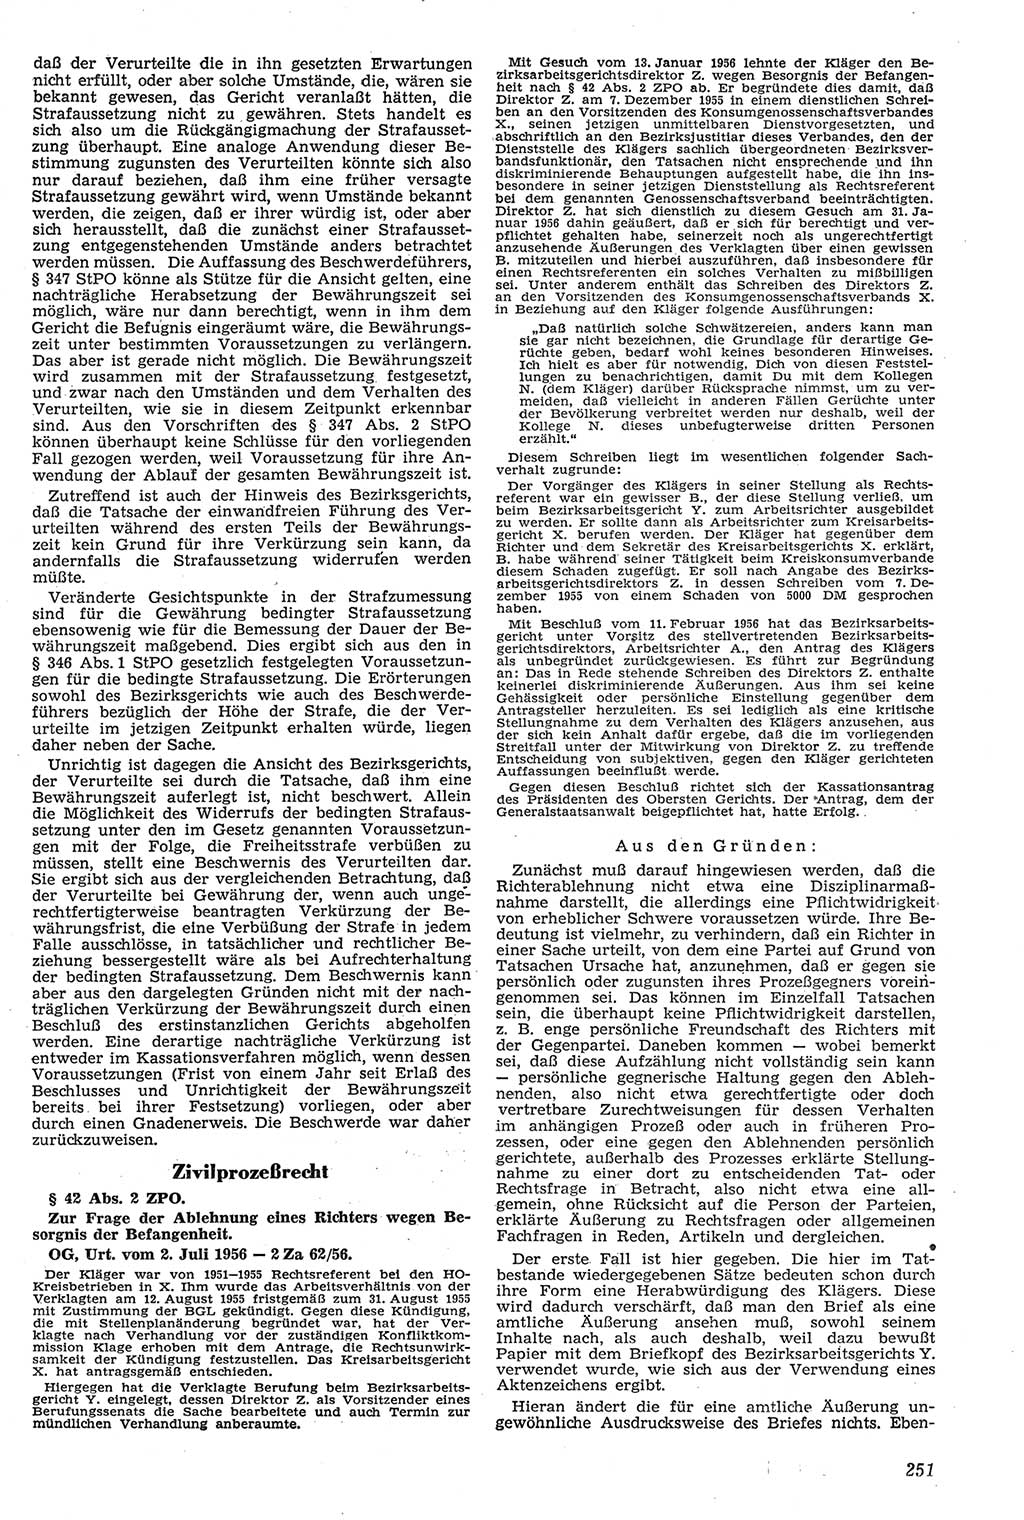 Neue Justiz (NJ), Zeitschrift für Recht und Rechtswissenschaft [Deutsche Demokratische Republik (DDR)], 11. Jahrgang 1957, Seite 251 (NJ DDR 1957, S. 251)